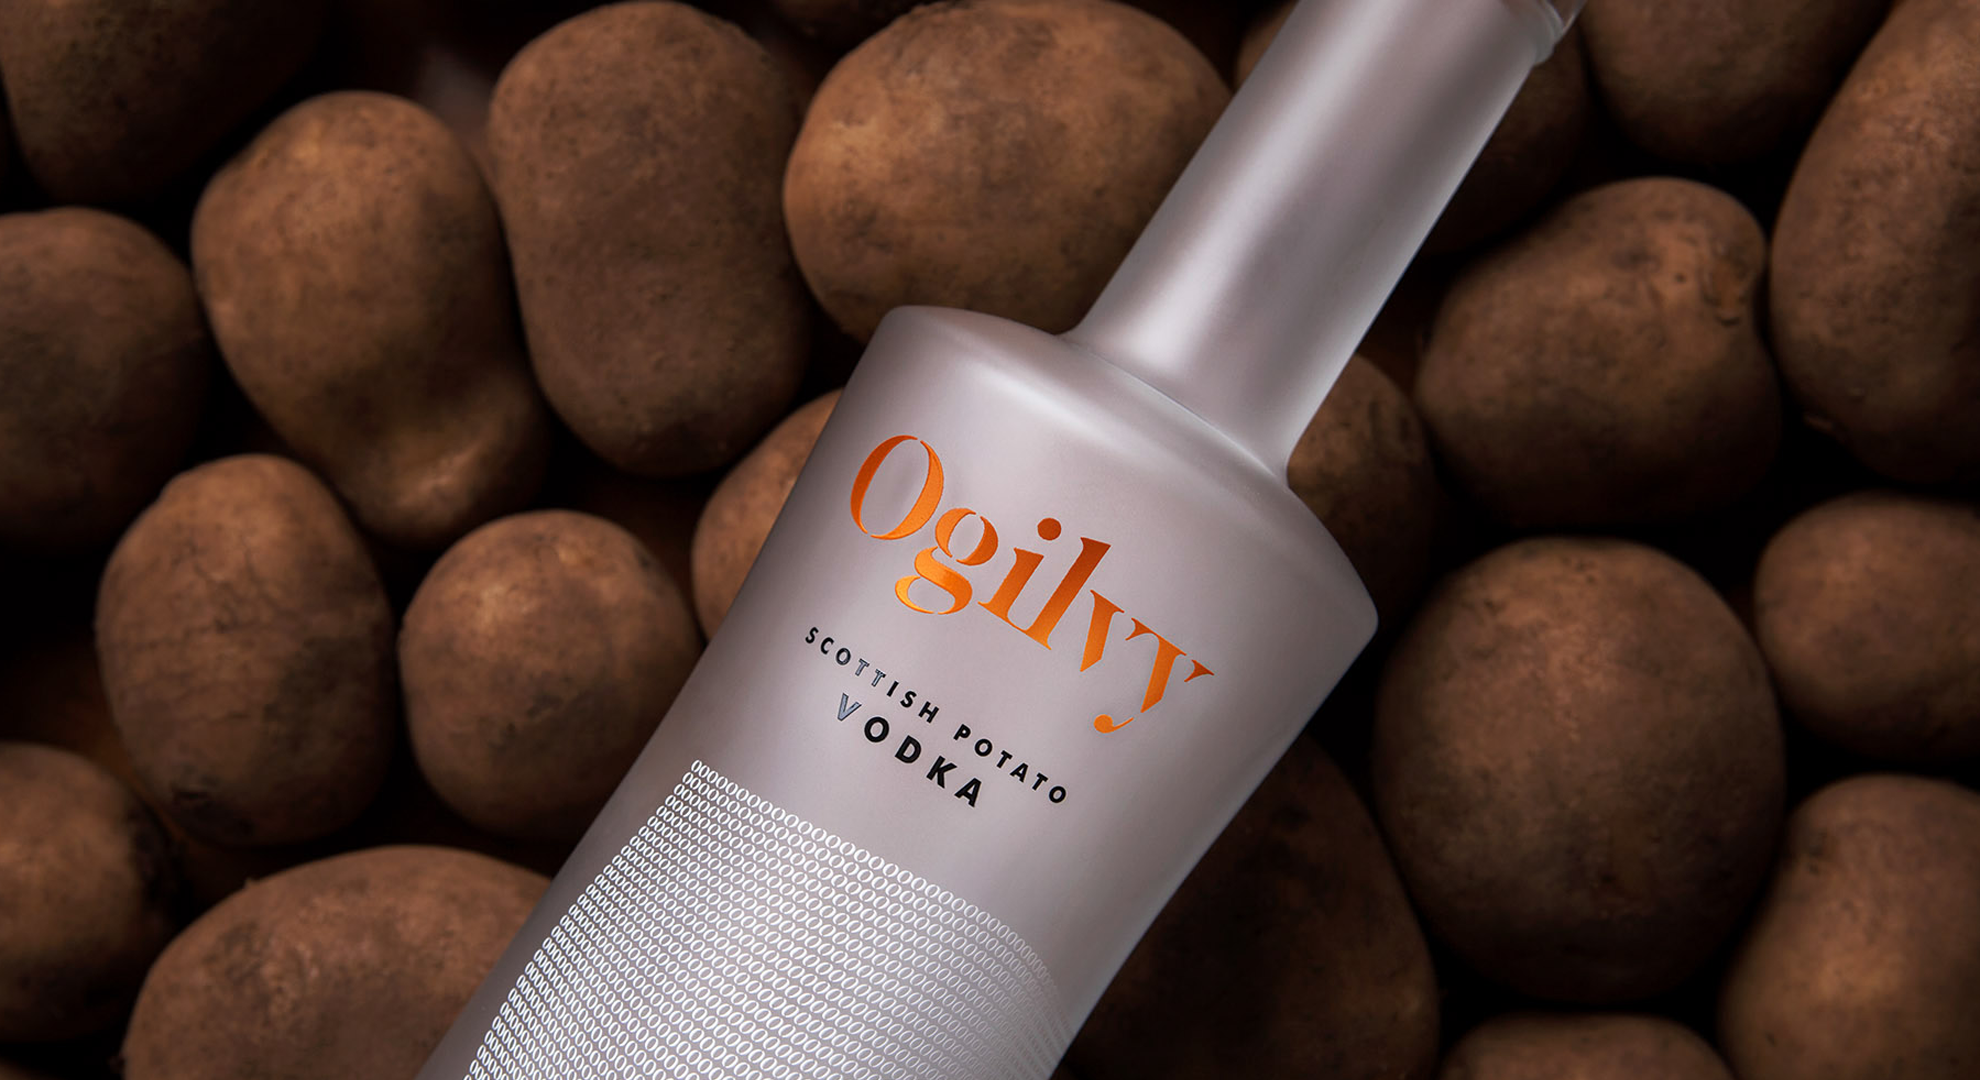 A bottle of Ogilvy Vodka on potatoes